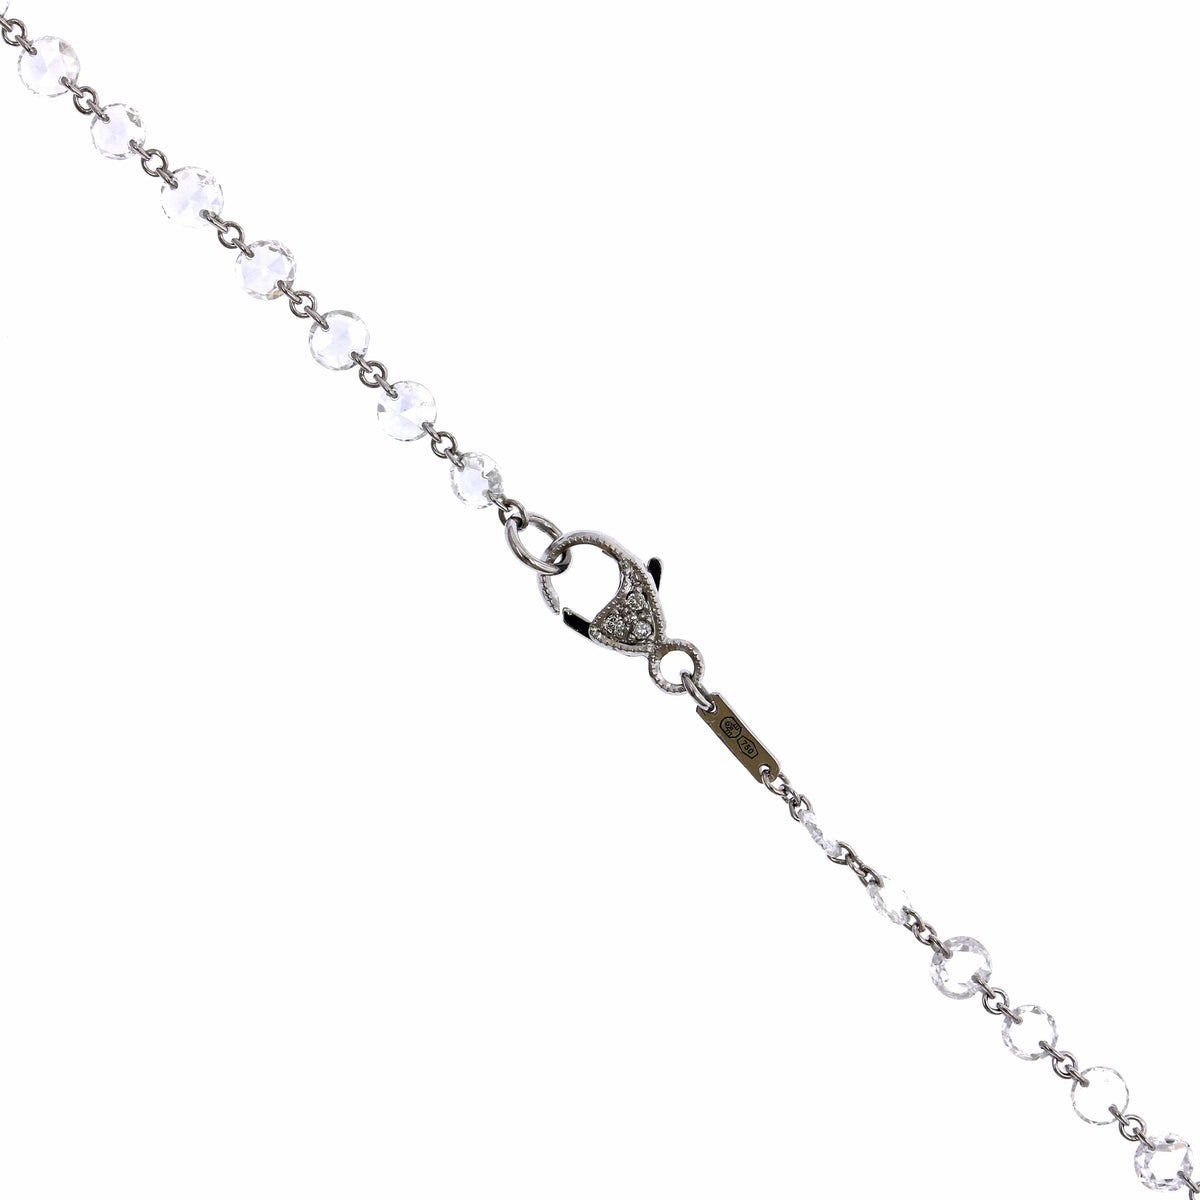 Etho Maria 18K White Gold Rose Cut Diamond Necklace